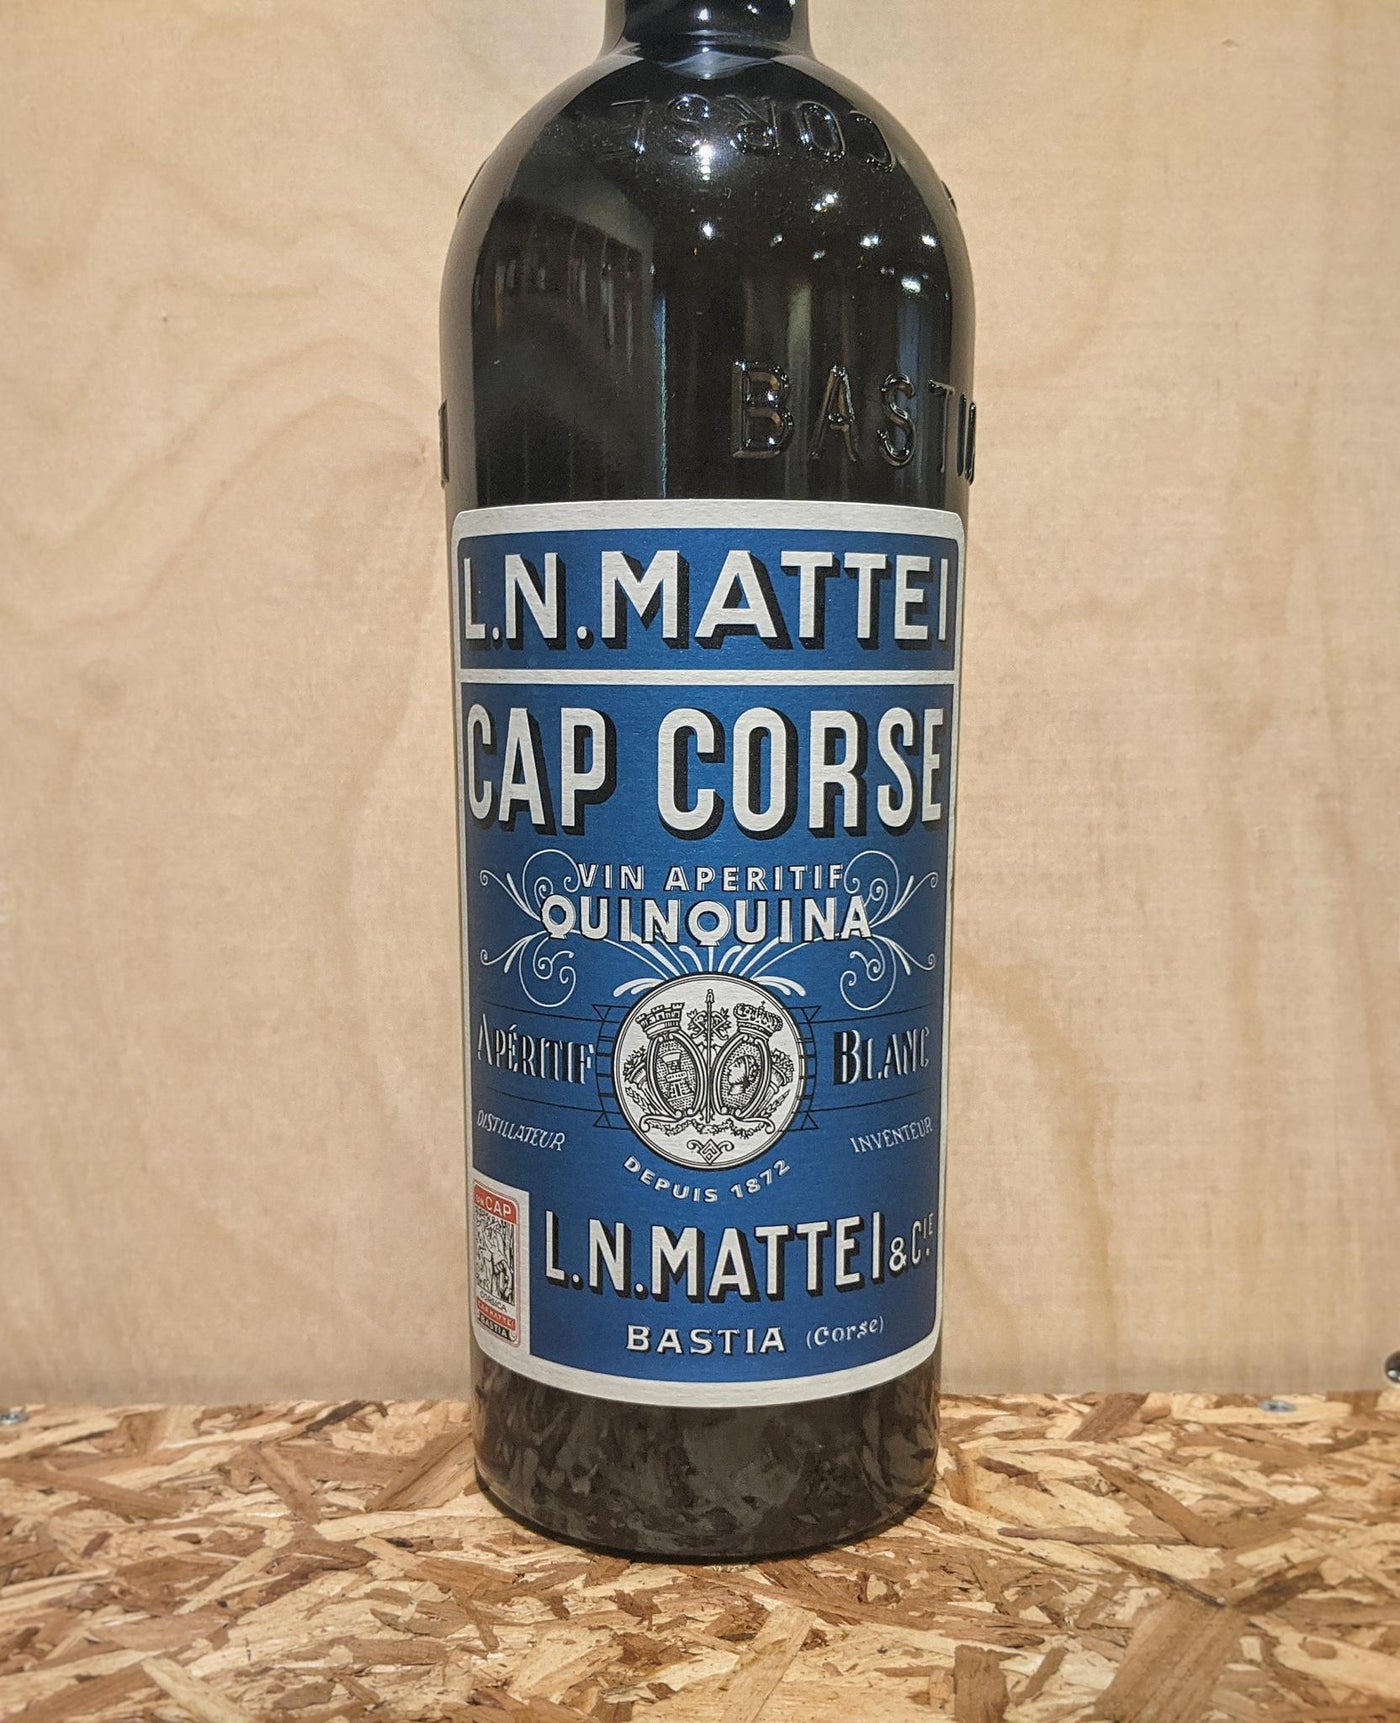 L.N. Mattei Cap Corse Vin Aperitif Quinquina Blanc NV (Corsica, France)